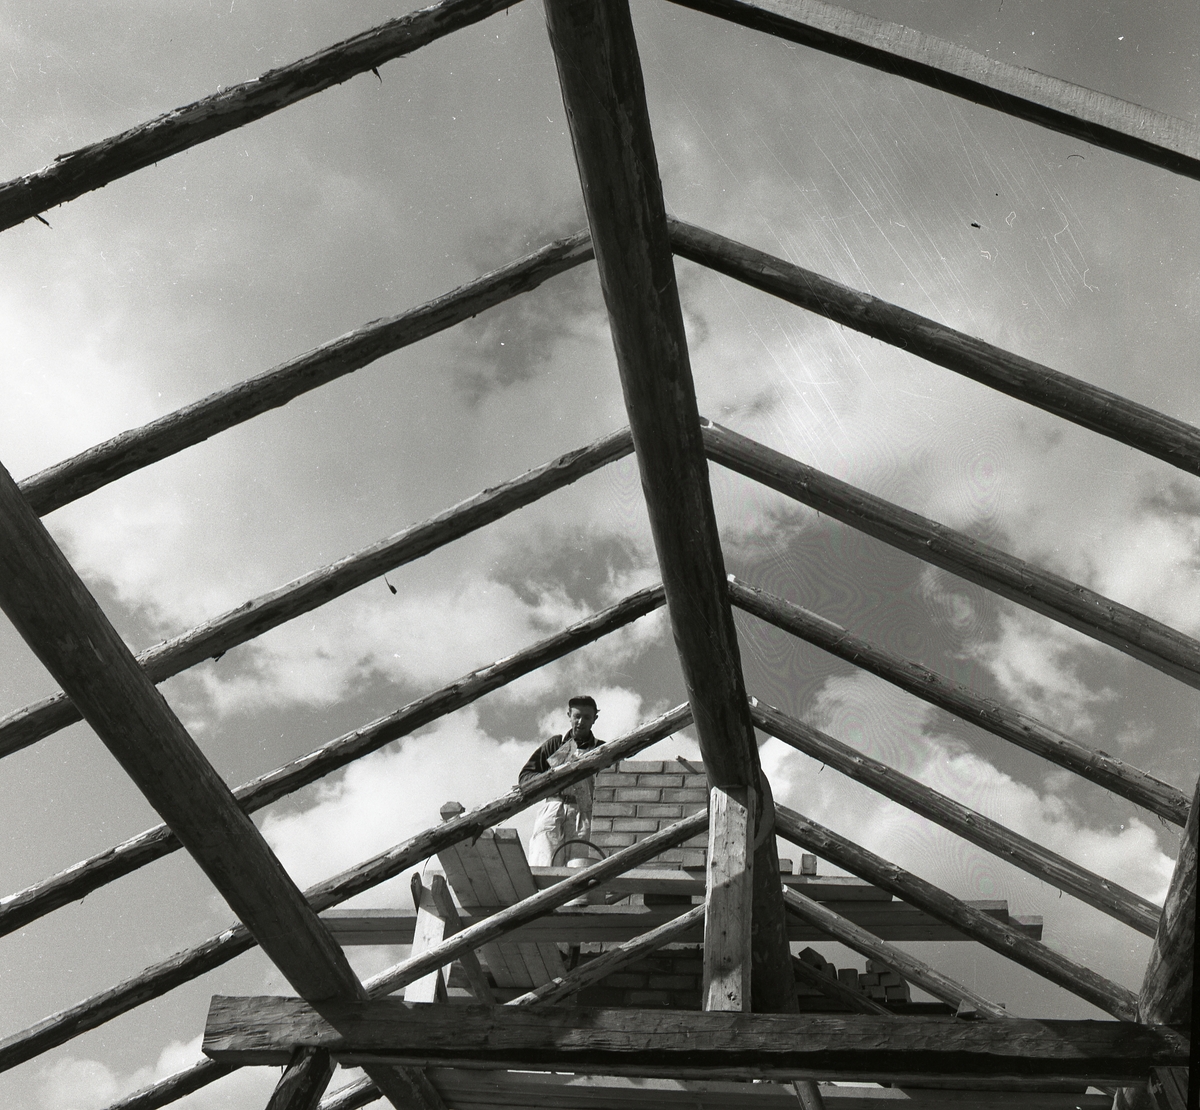 En man står på en byggställning och murar skorsten på ladugården, Sunnanåker 14 juni 1956.